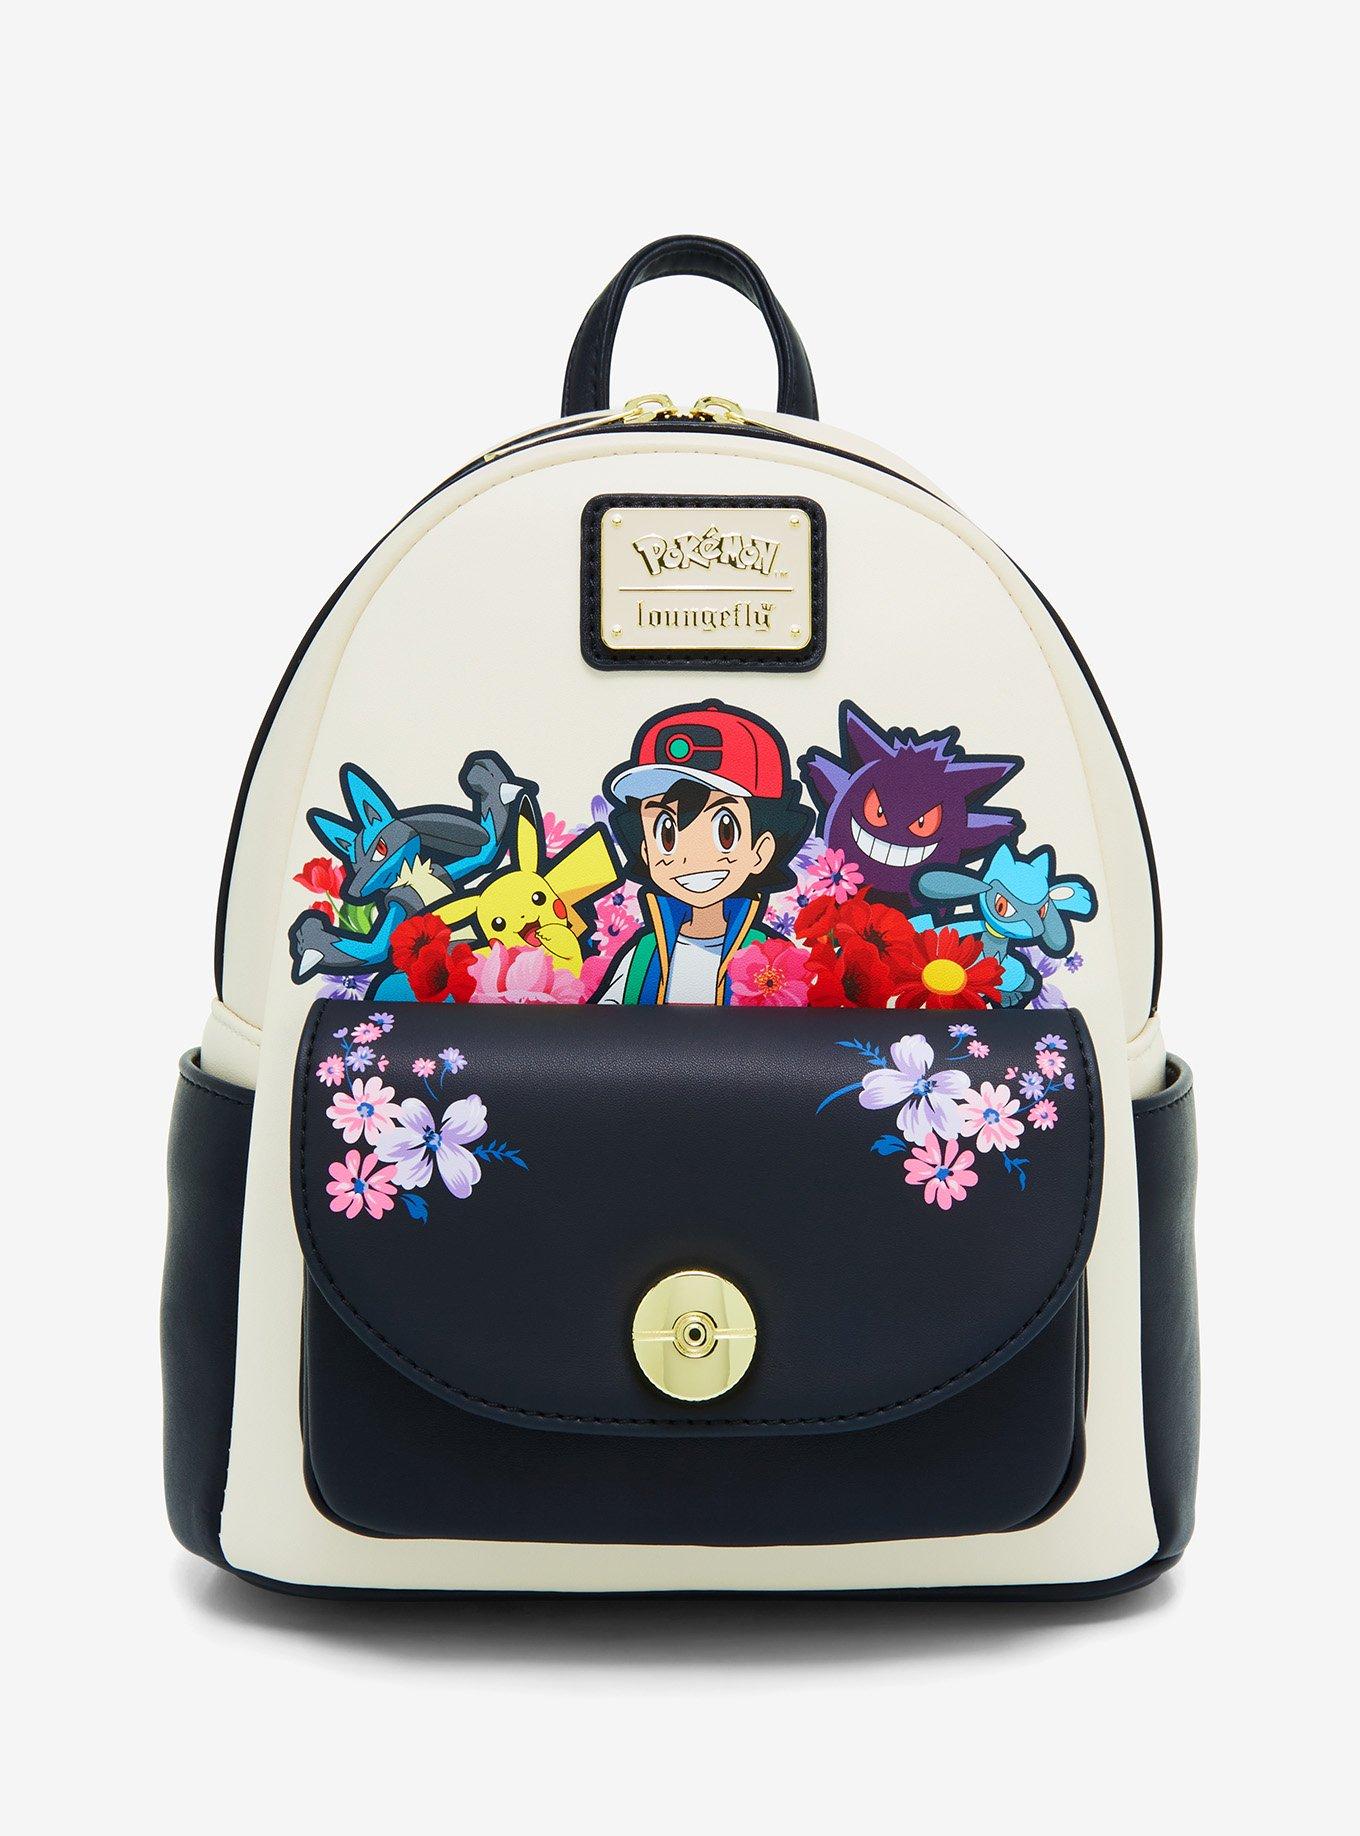 naruto mini backpack, Five Below